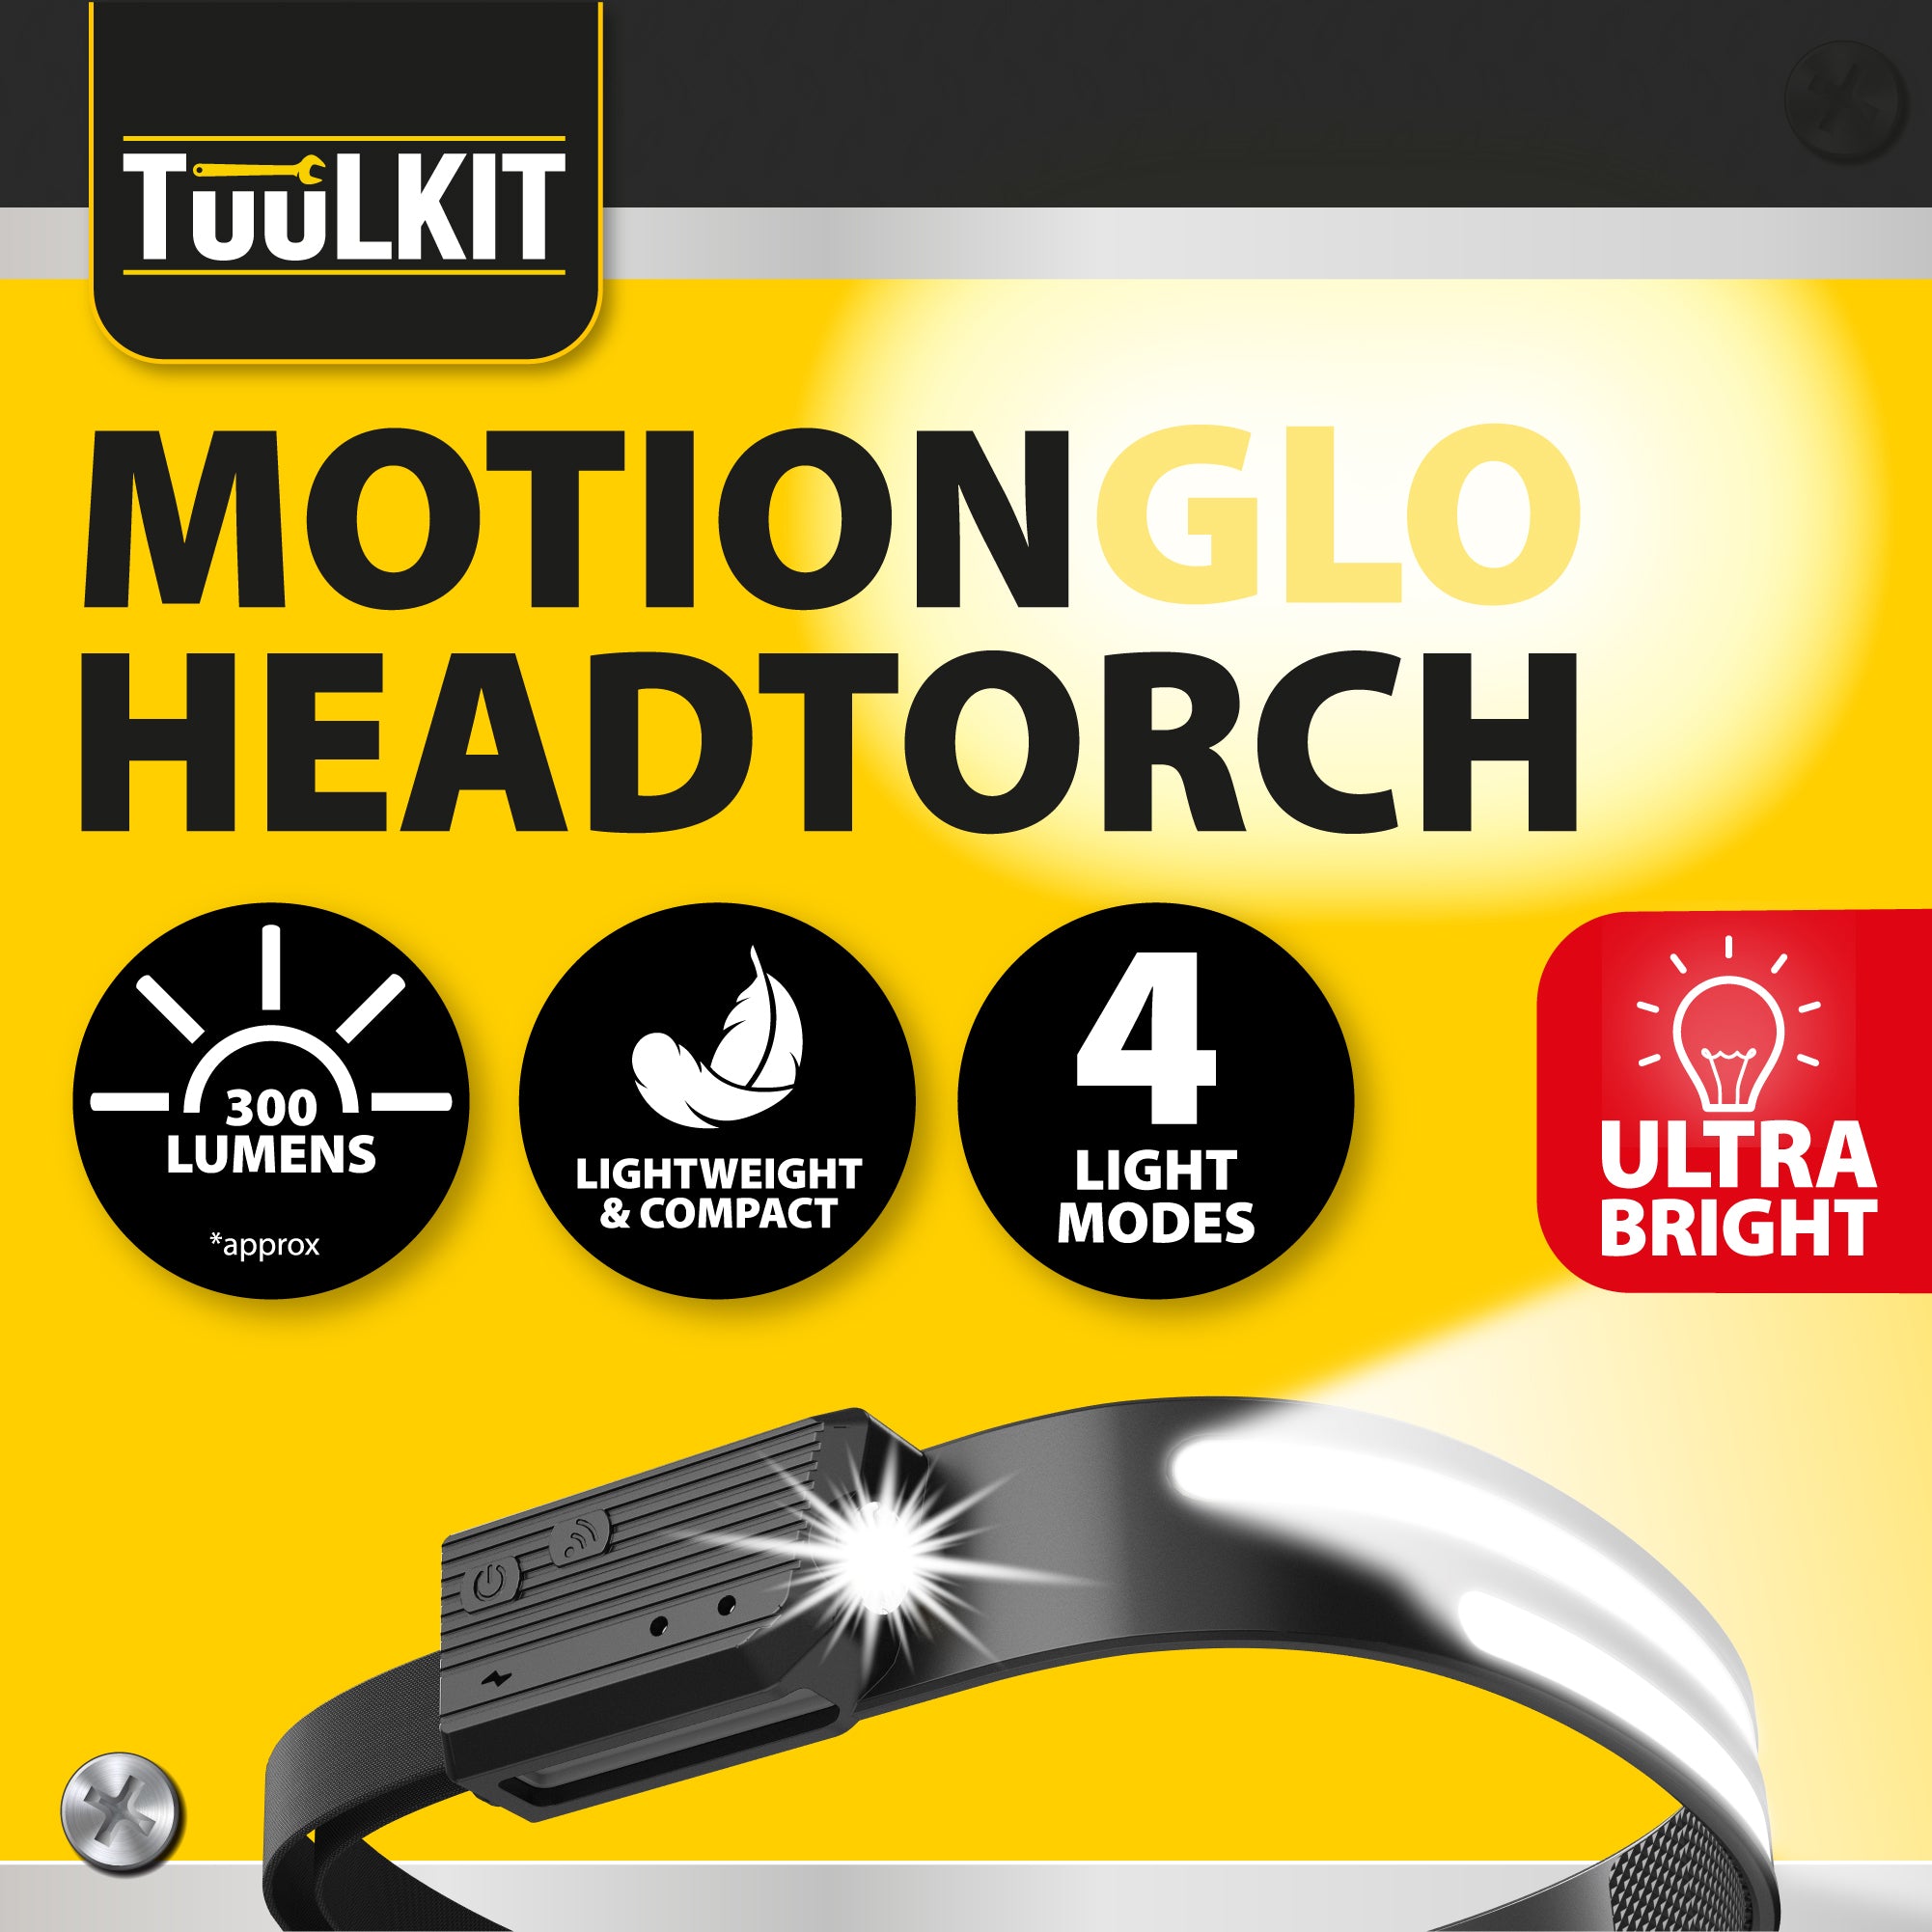 Head Torch | Headlamp | Motion Sensor Headtorch | Lightweight Headtorch - DSL